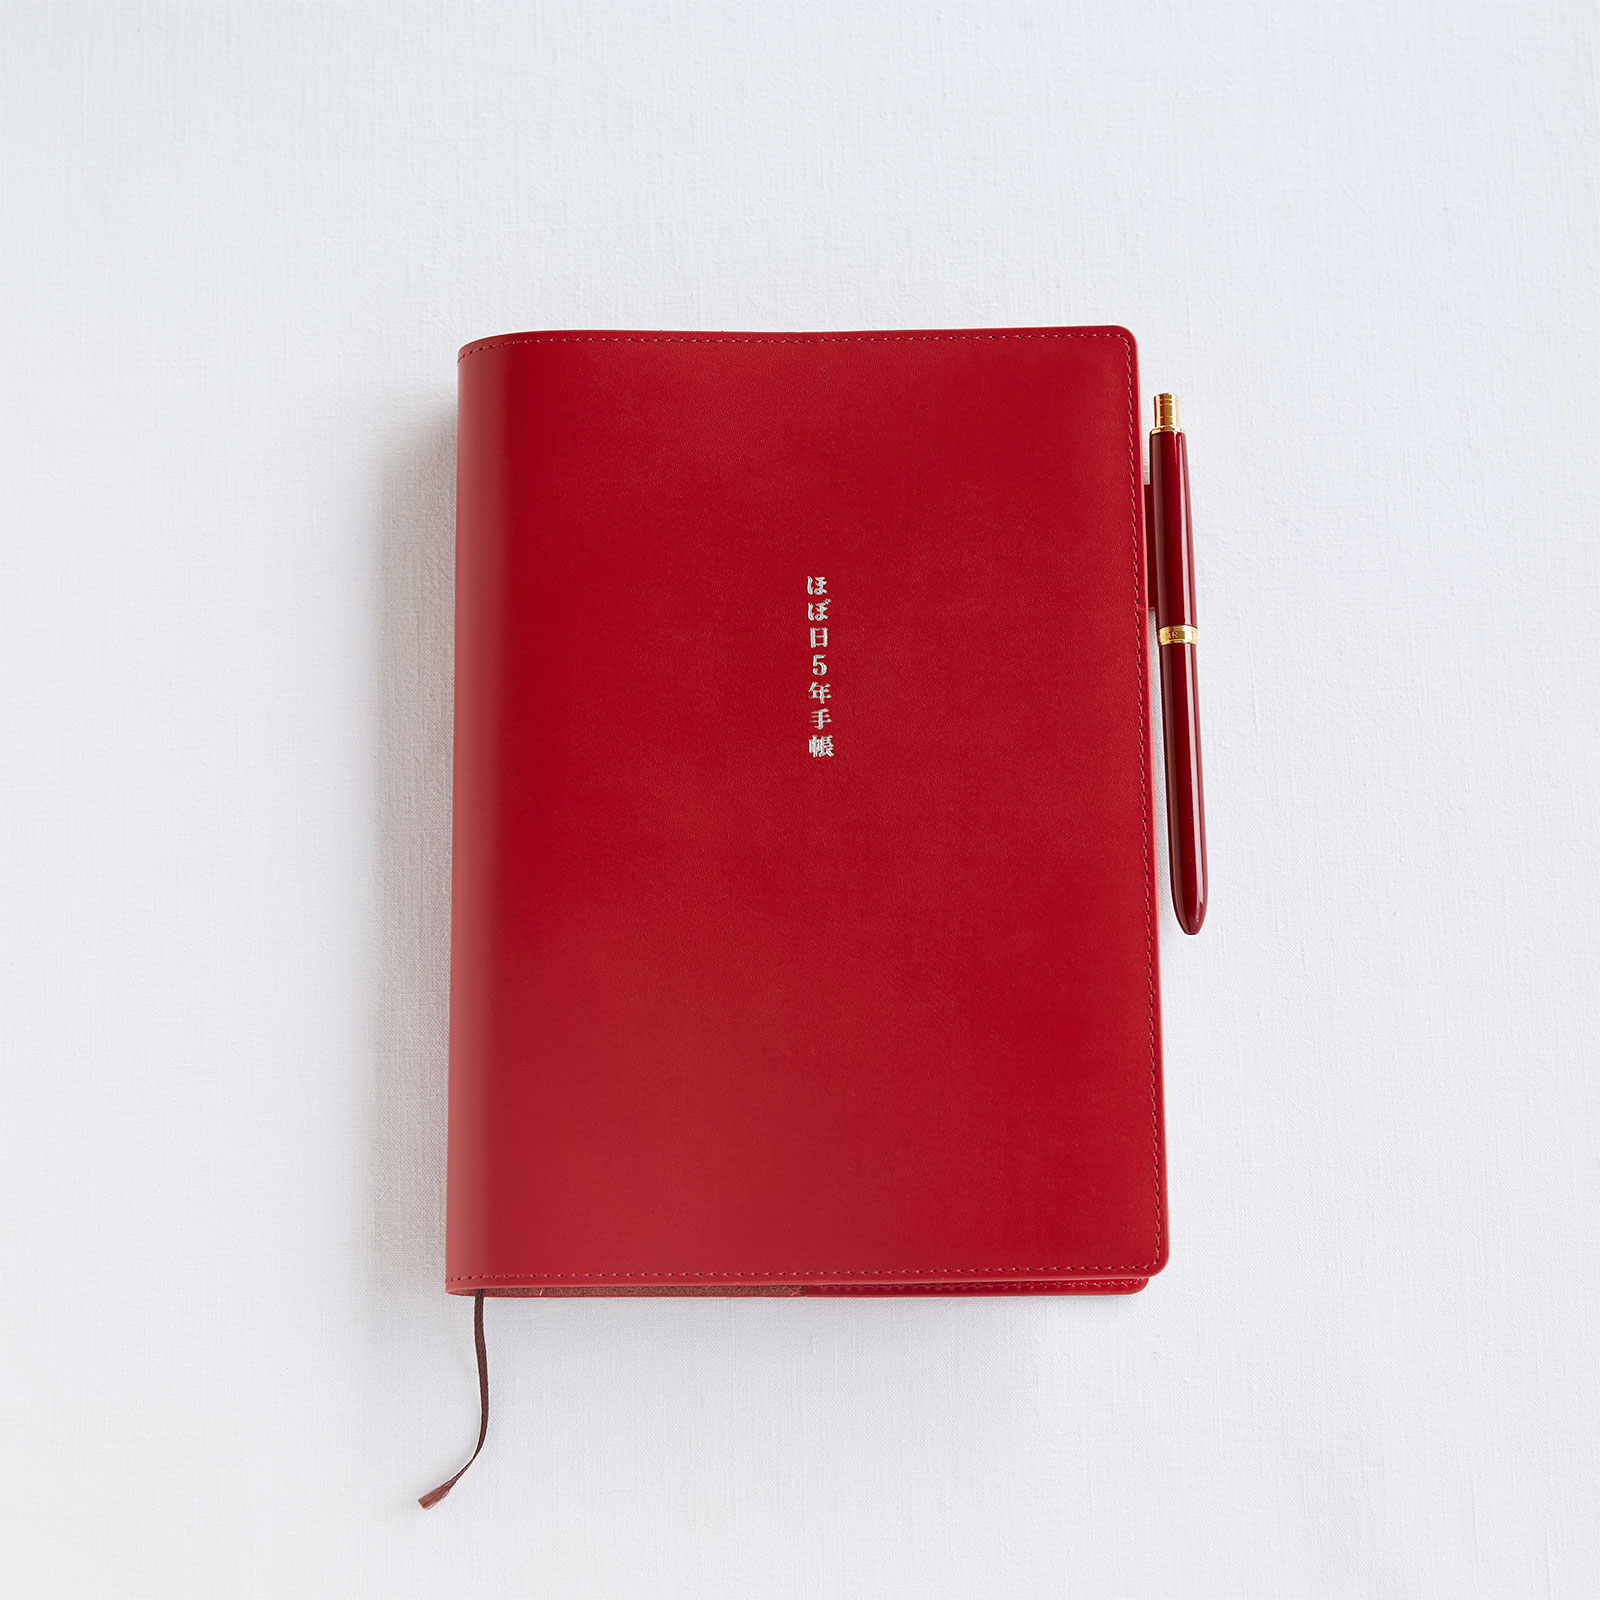 おおきいほぼ日５年手帳のカバー（赤） - 手帳ラインナップ - ほぼ日